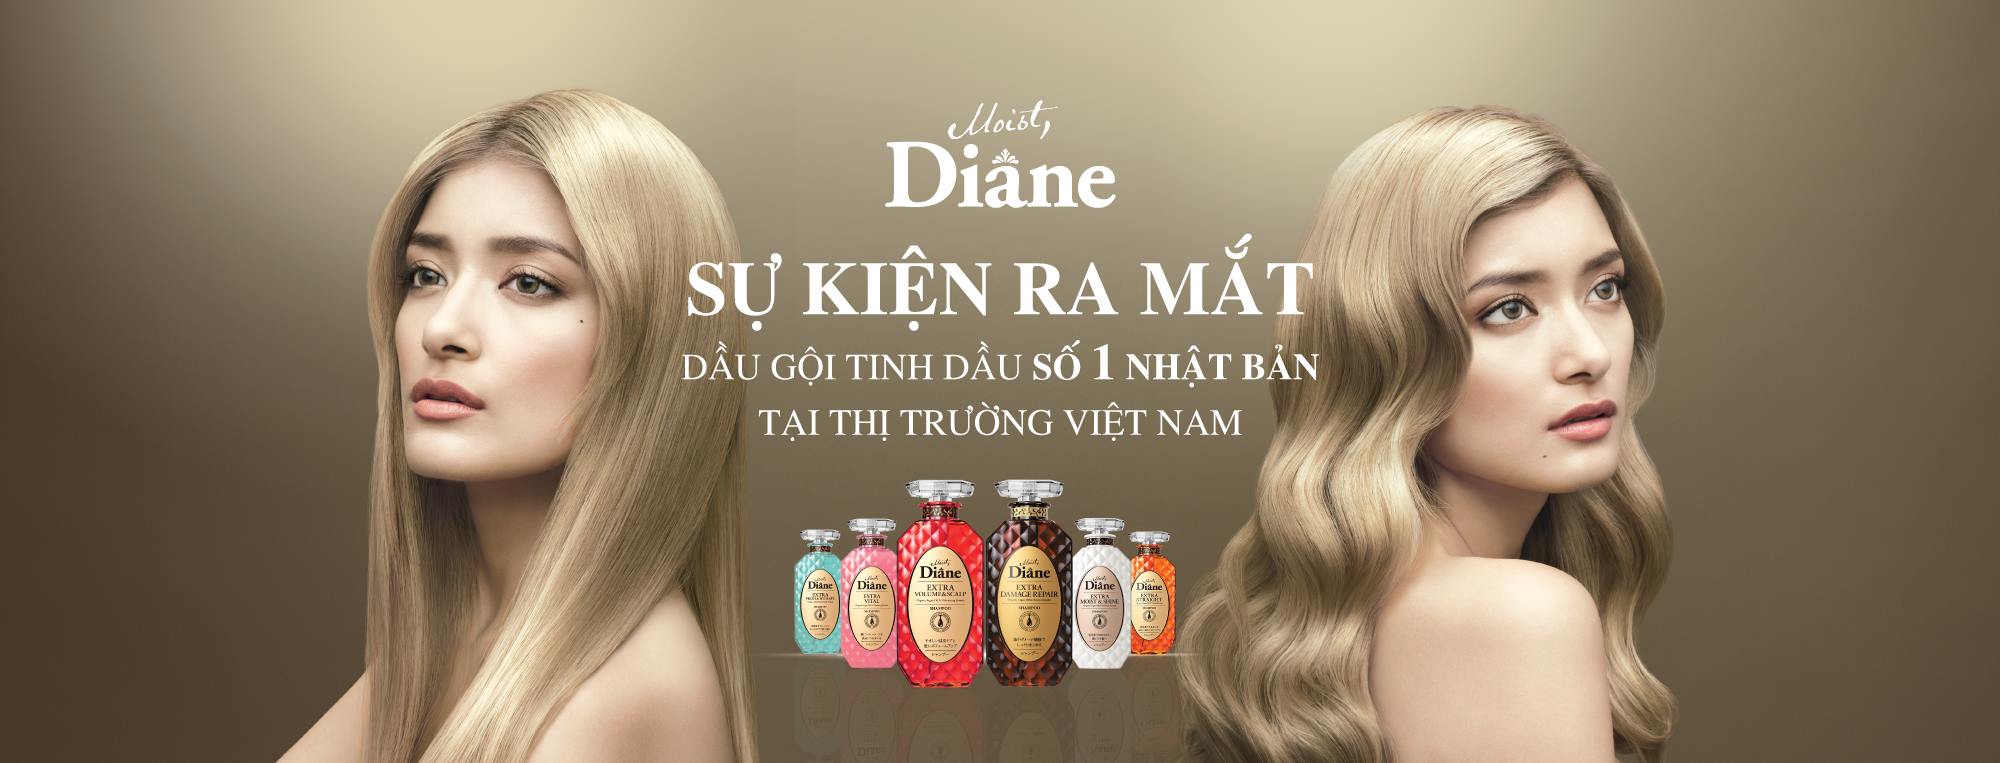 Hapumart và sự kiện ra mắt thương hiệu dầu gội Moist Diane của Nhật.